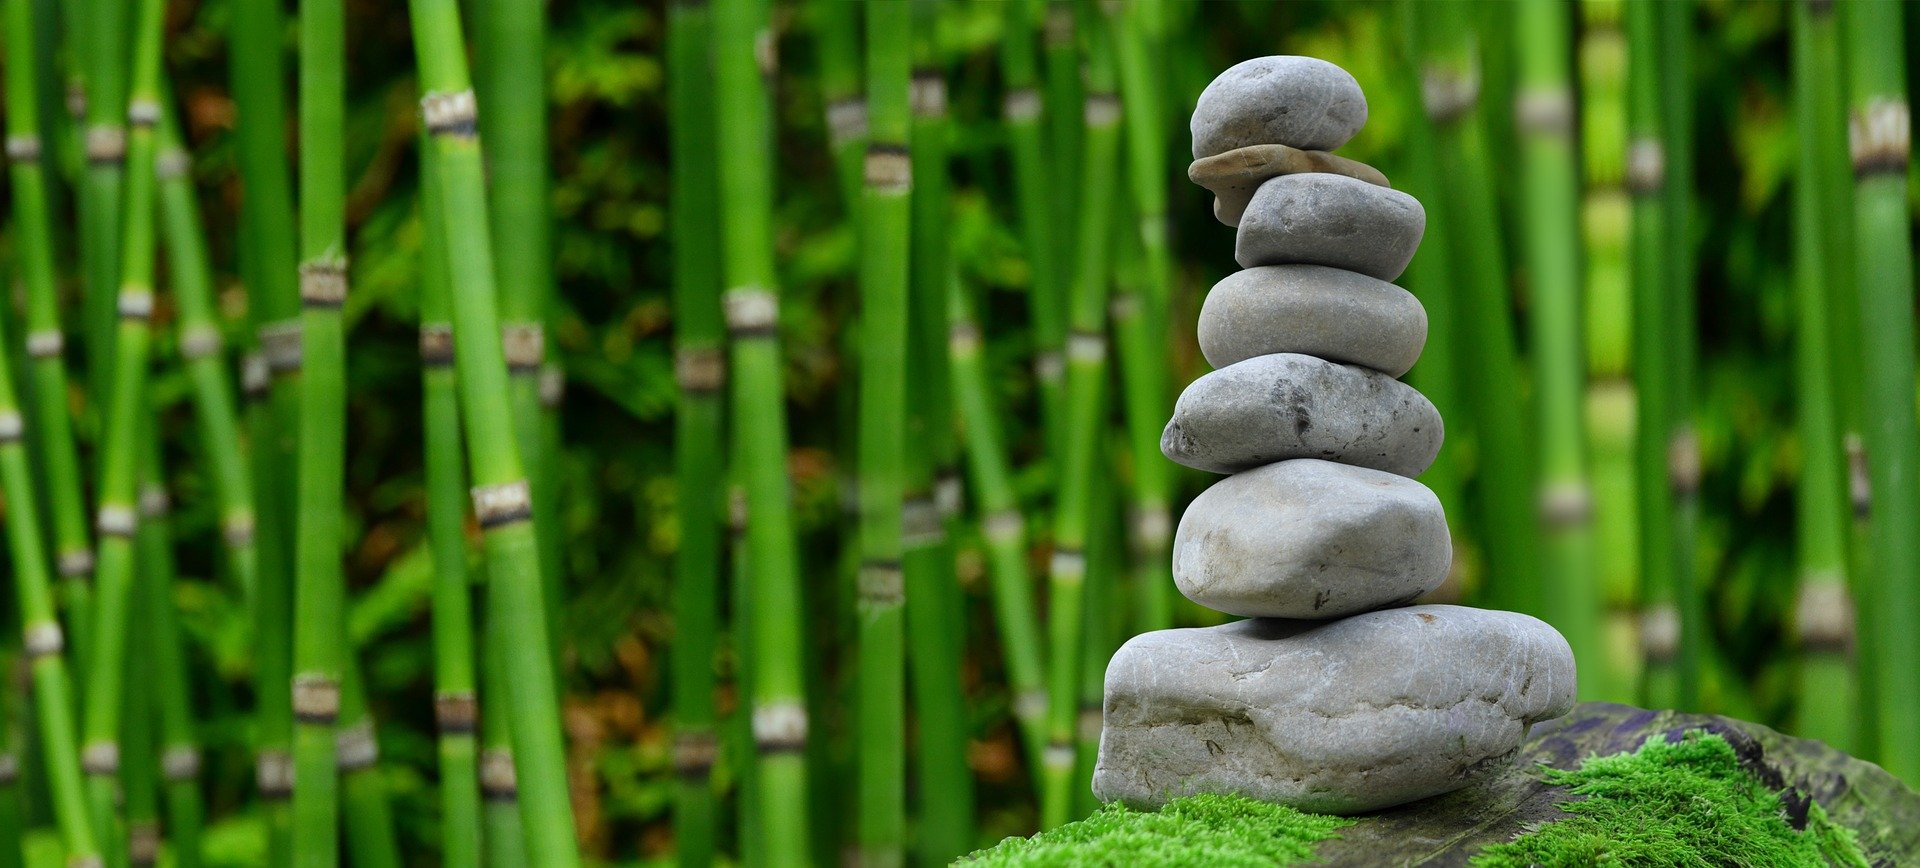 Ein Steinstapel vor Bambus. Sieben kleine rund Steine bilden einen Turm.